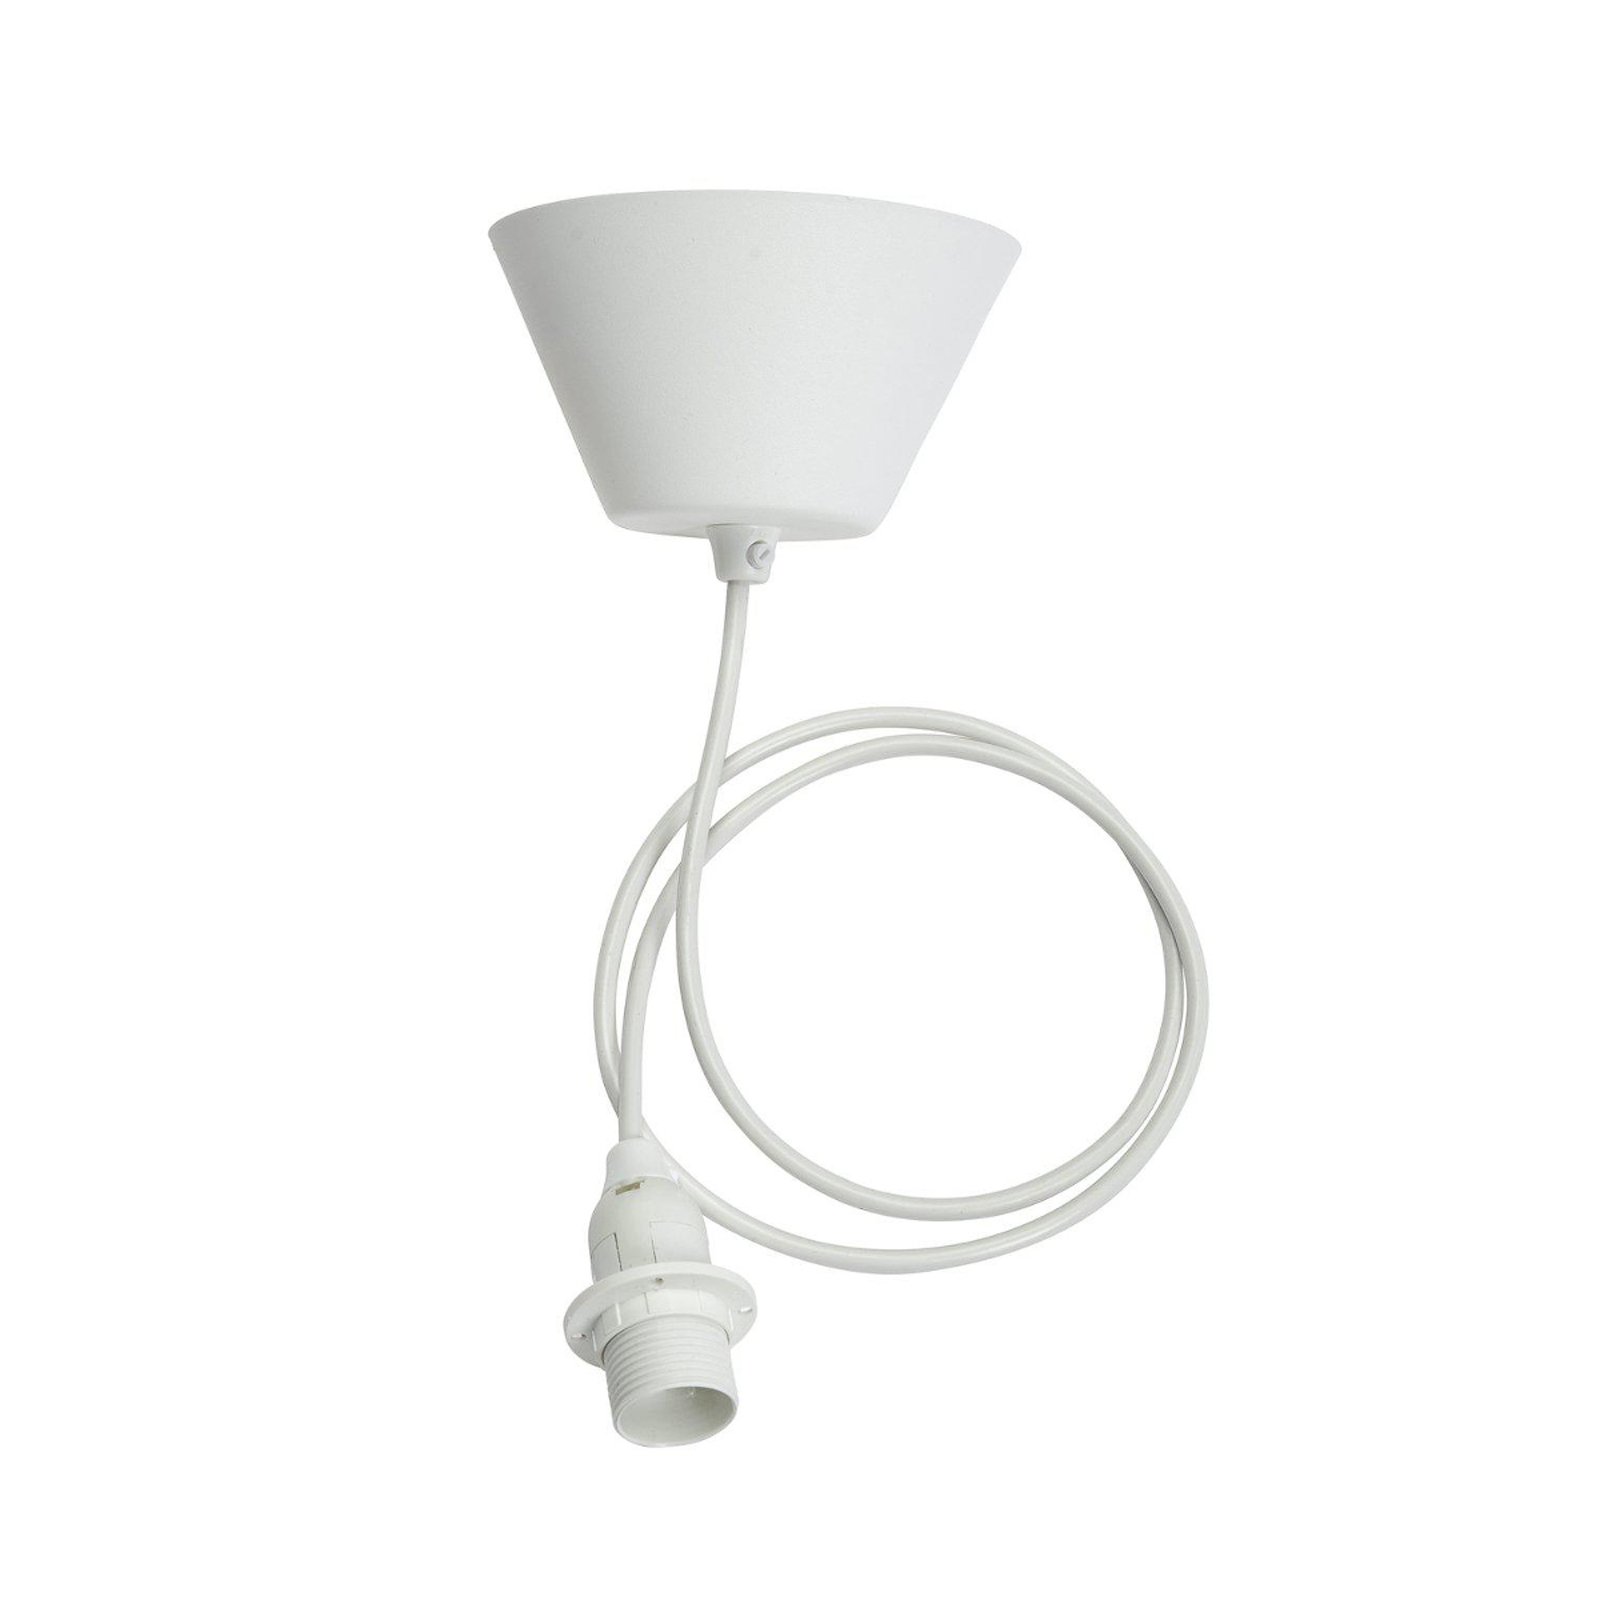 Lampa wisząca PR Home Sani, Ø44,5 cm, biała, białe zawieszenie, E14